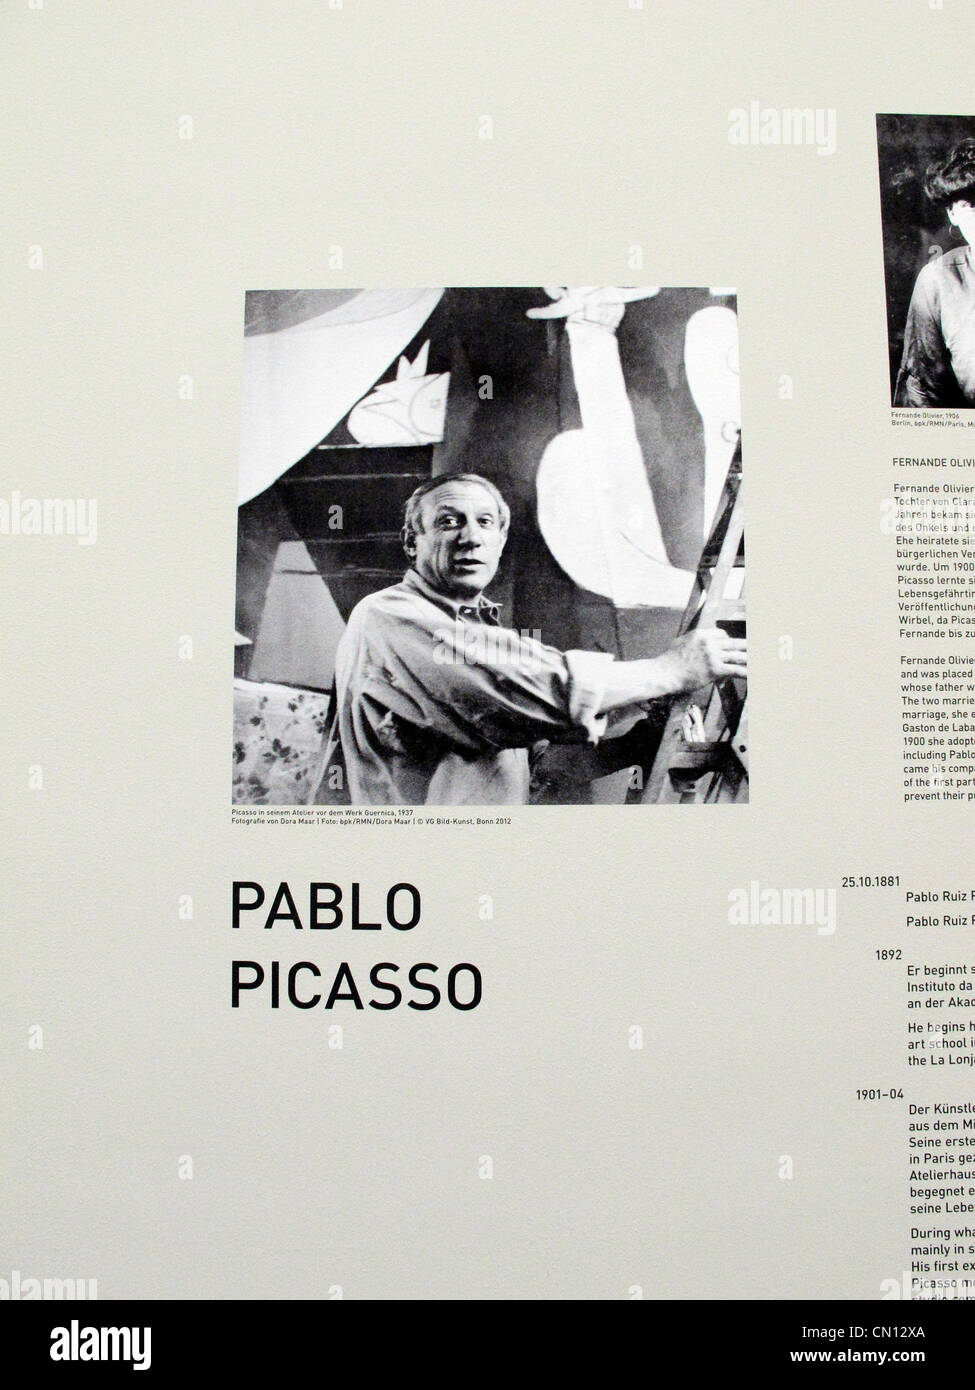 Allemagne Munich Pinakothek der Moderne "Les femmes" Picasso Beckmann De Kooning 2012 mars. Banque D'Images